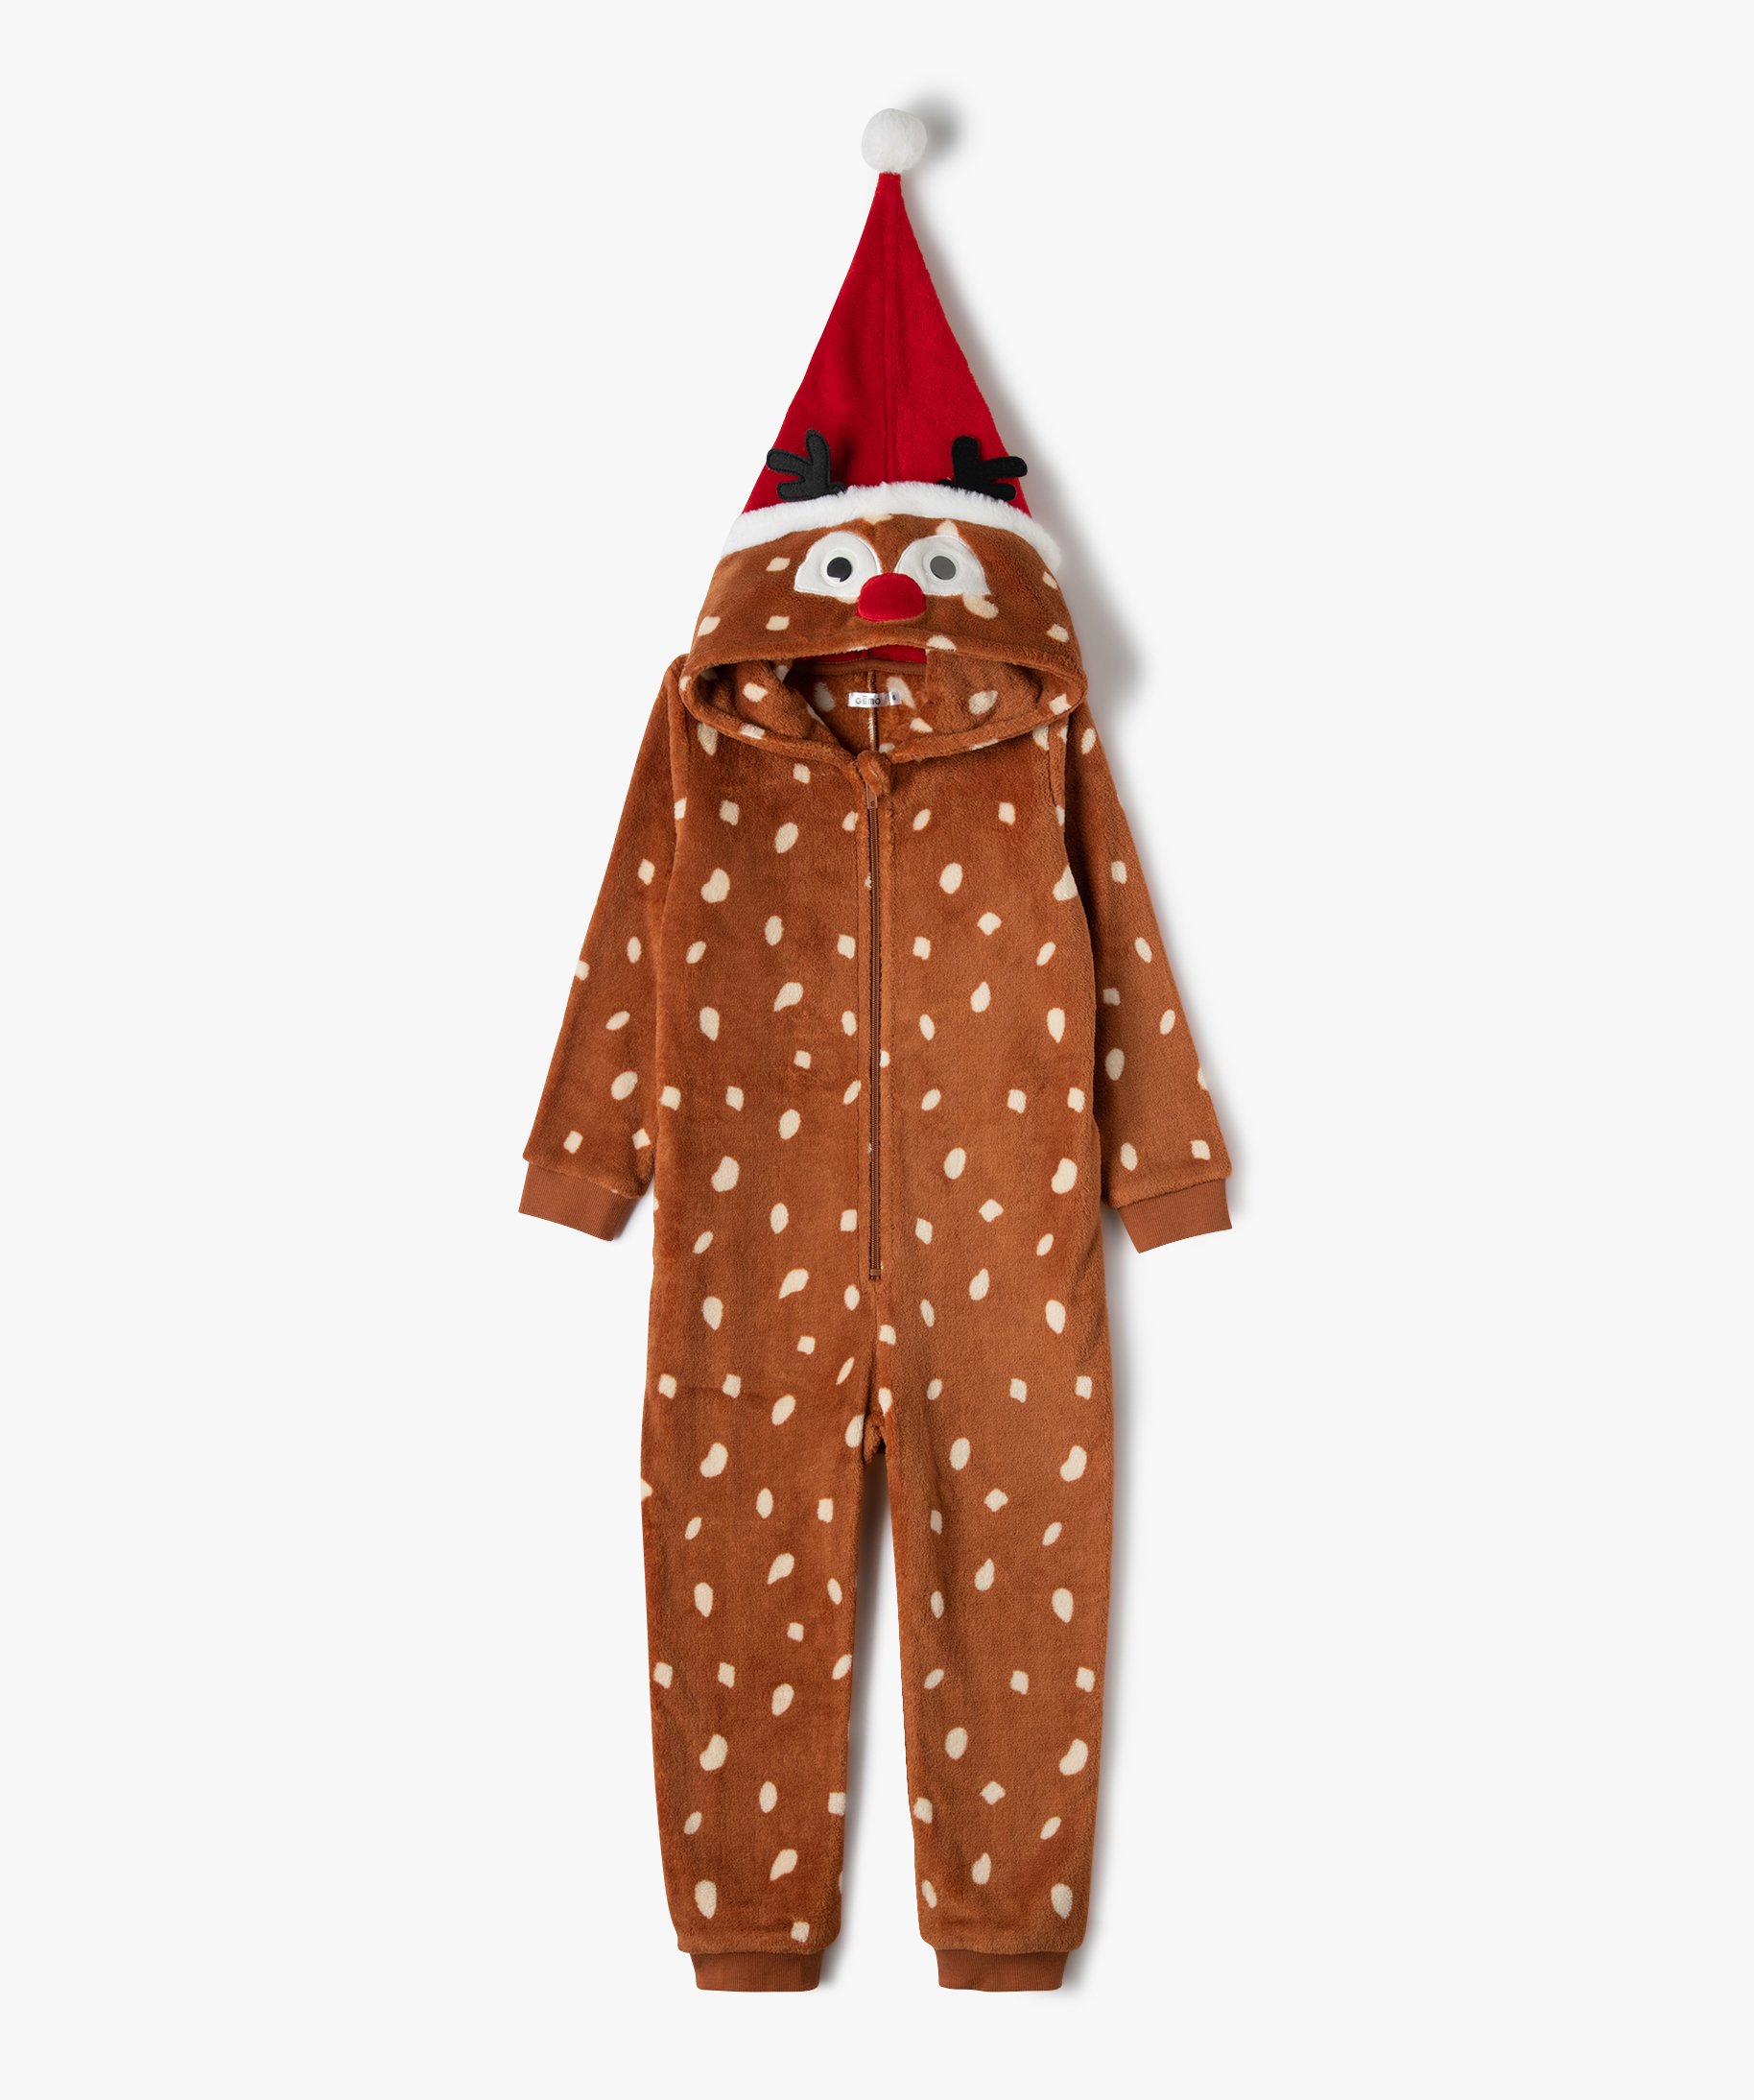 Pyjama Noel Enfant Noël Combinaison D'hiver,Costume Noël Enfant 8